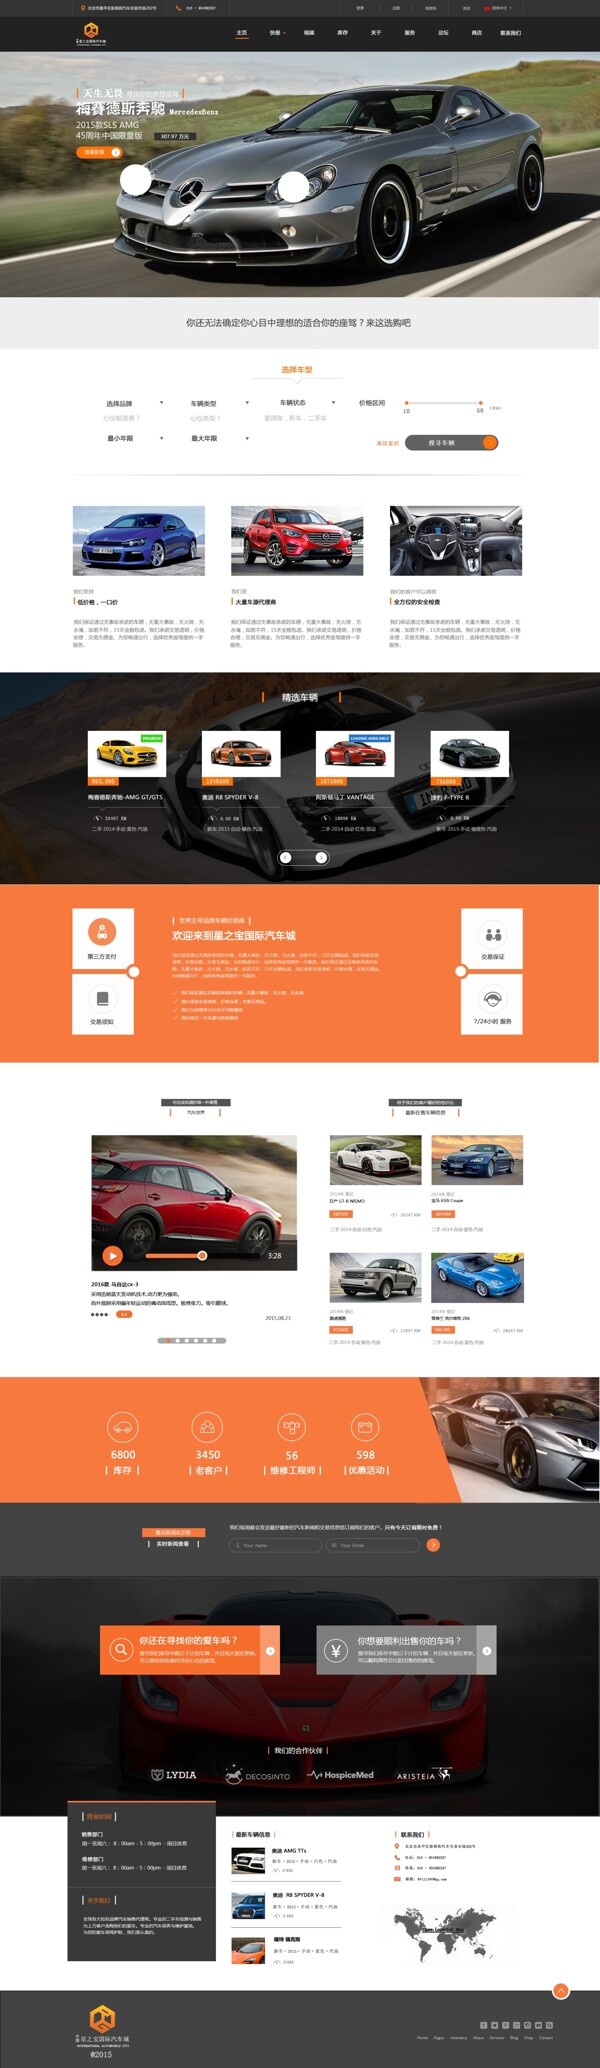 炫酷跑车网站模板PSD分层素材图片